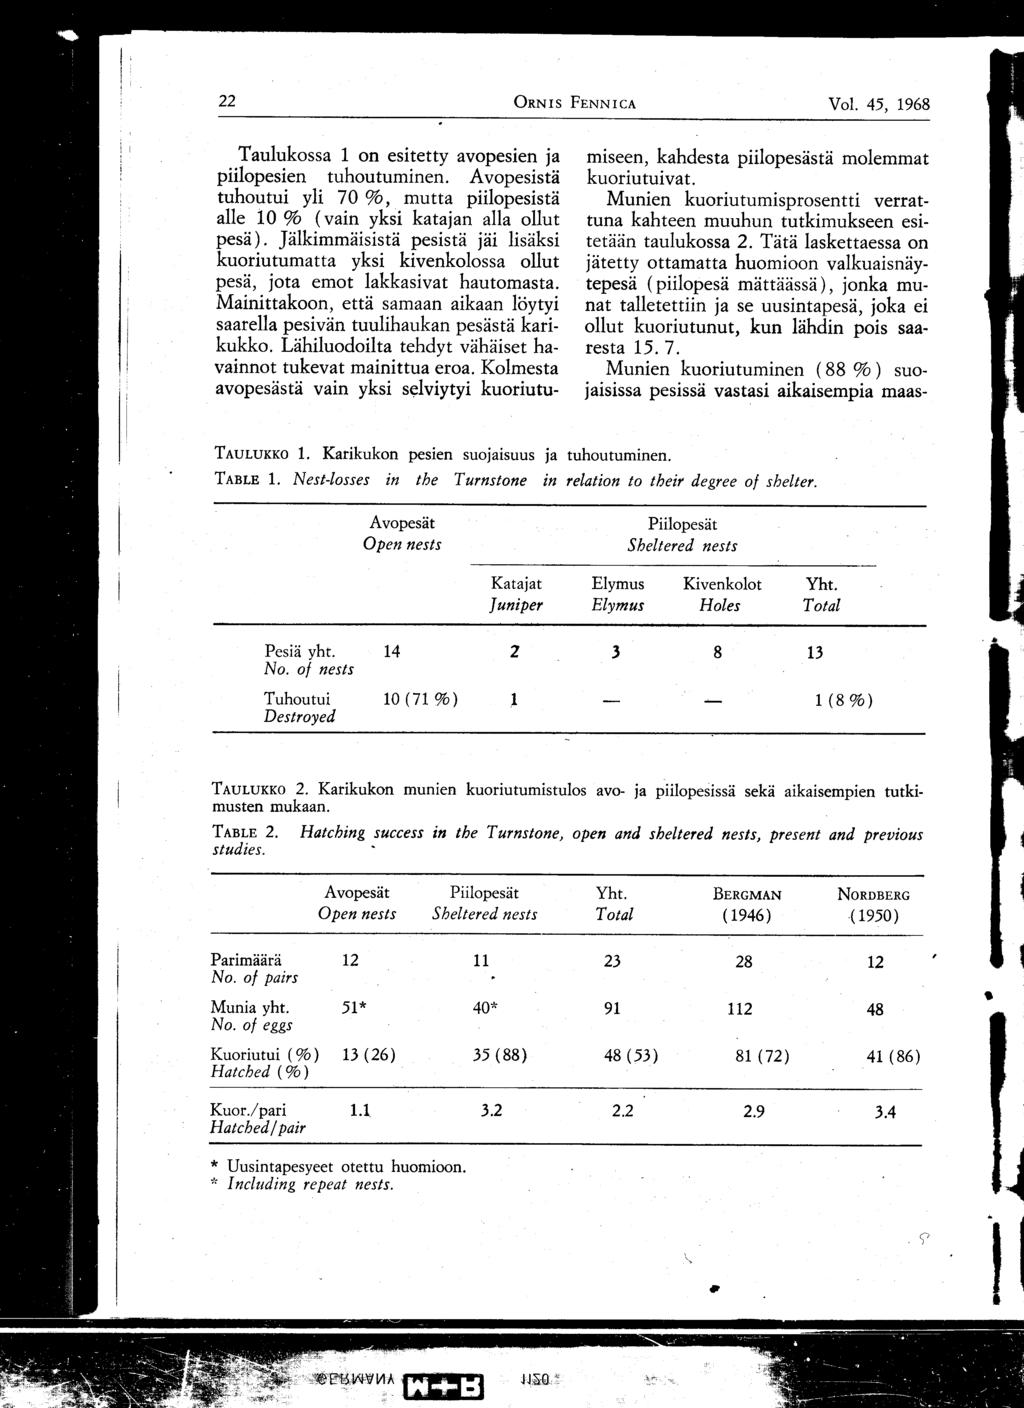 22 ORNI s FENNICA Vol. 45, 1968 Taulukossa 1 on esitetty avopesien ja piilopesien tuhoutuminen. Avopesistä tuhoutui yli 70 %, mutta piilopesistä alle 10 % (vain yksi katajan alla ollut pesä).